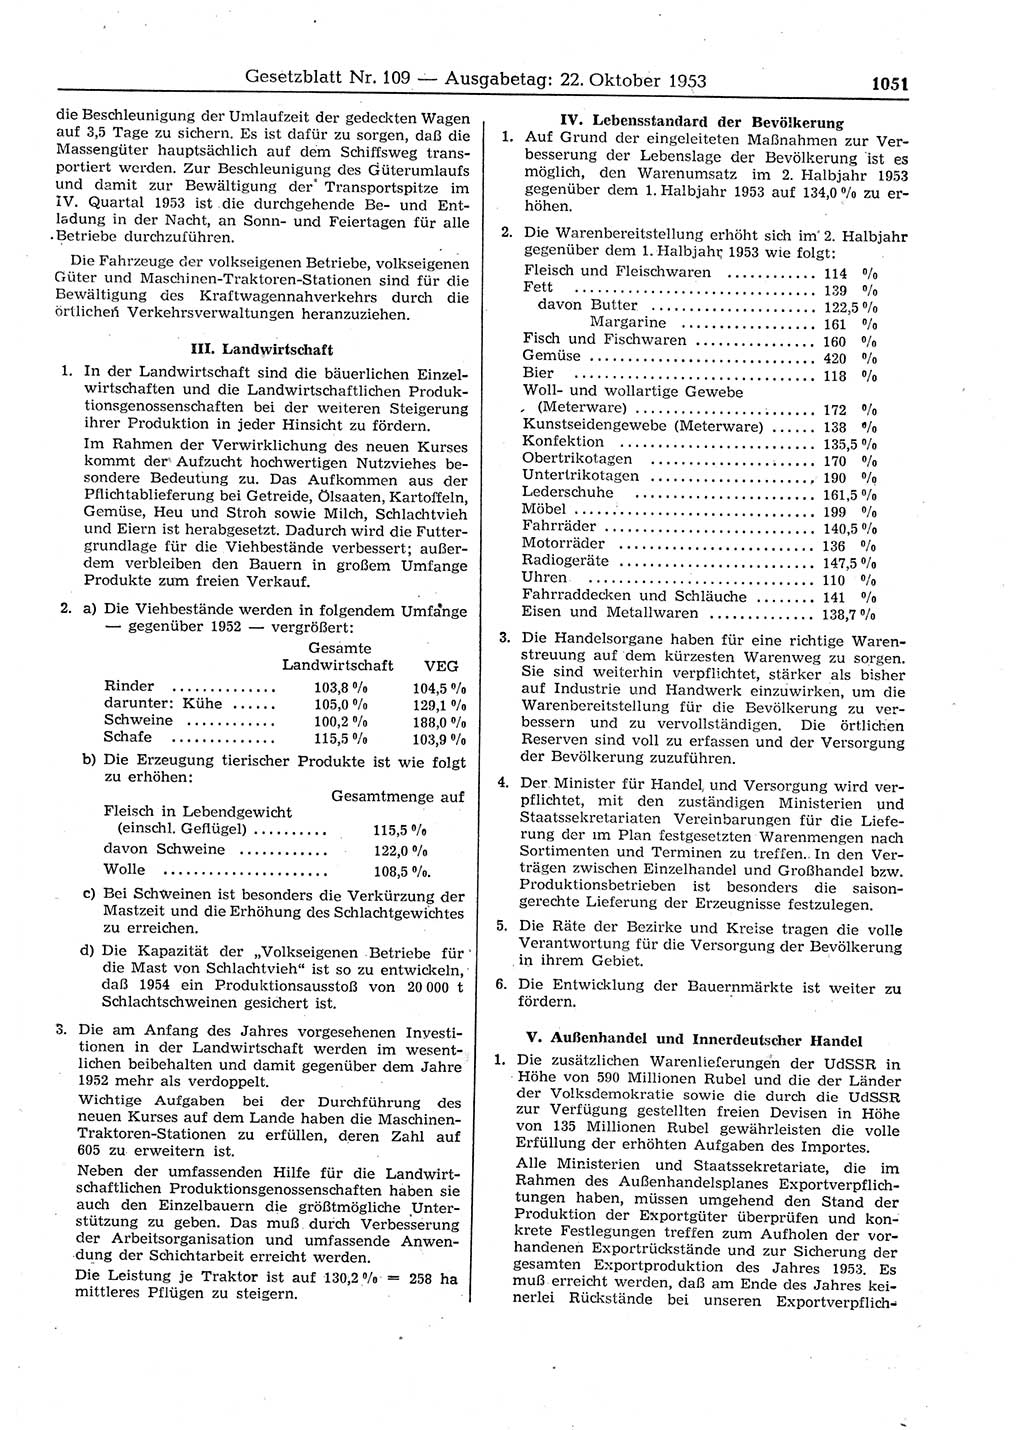 Gesetzblatt (GBl.) der Deutschen Demokratischen Republik (DDR) 1953, Seite 1051 (GBl. DDR 1953, S. 1051)